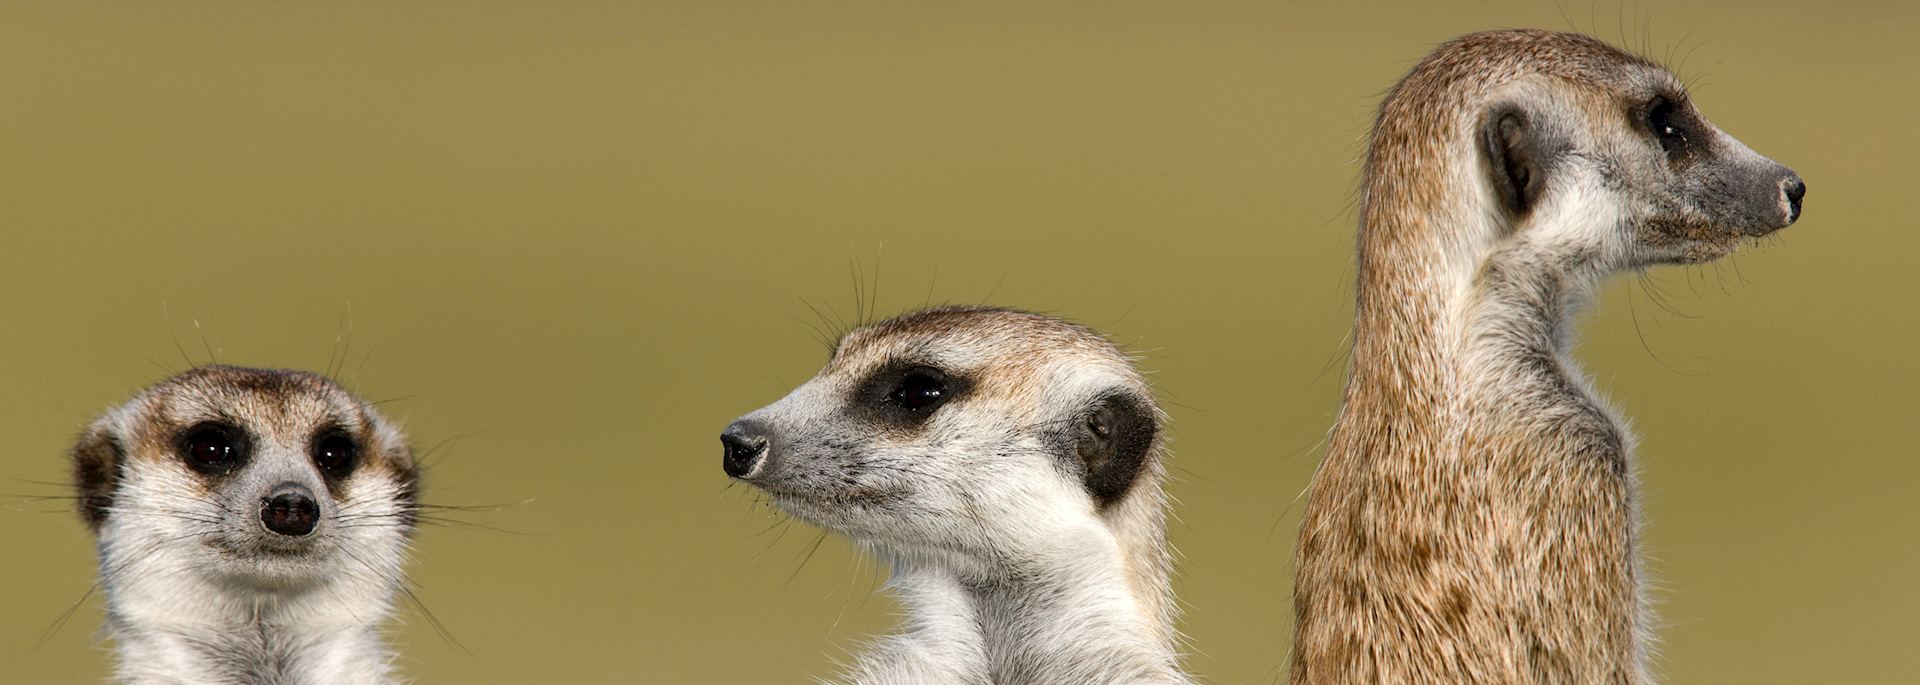 Family of meerkats in Botswana 